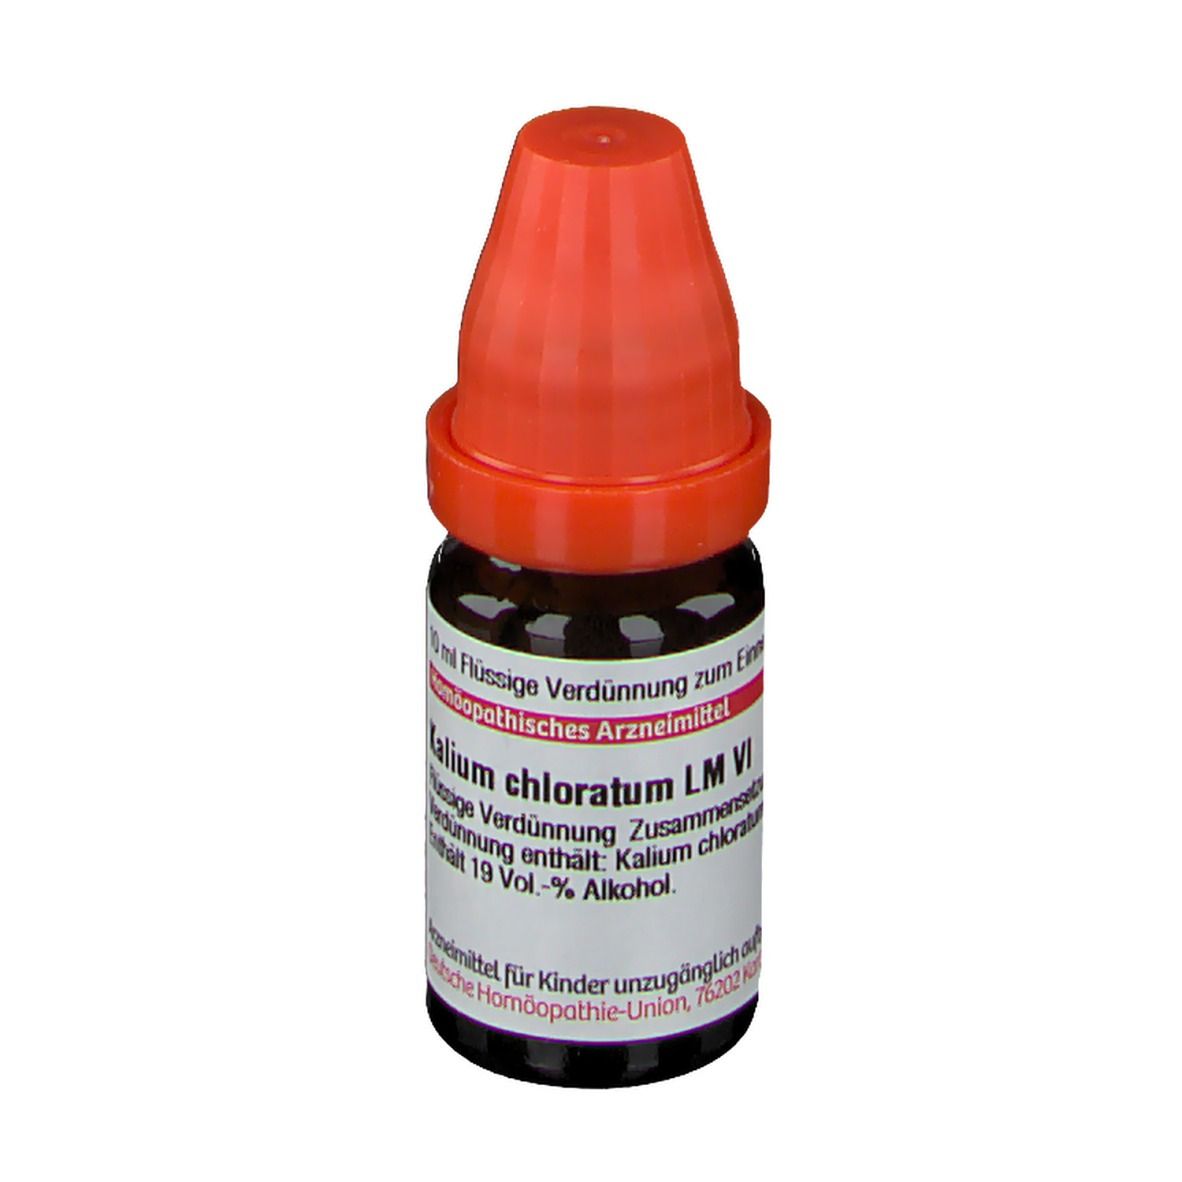 DHU Kalium Chloratum LM VI